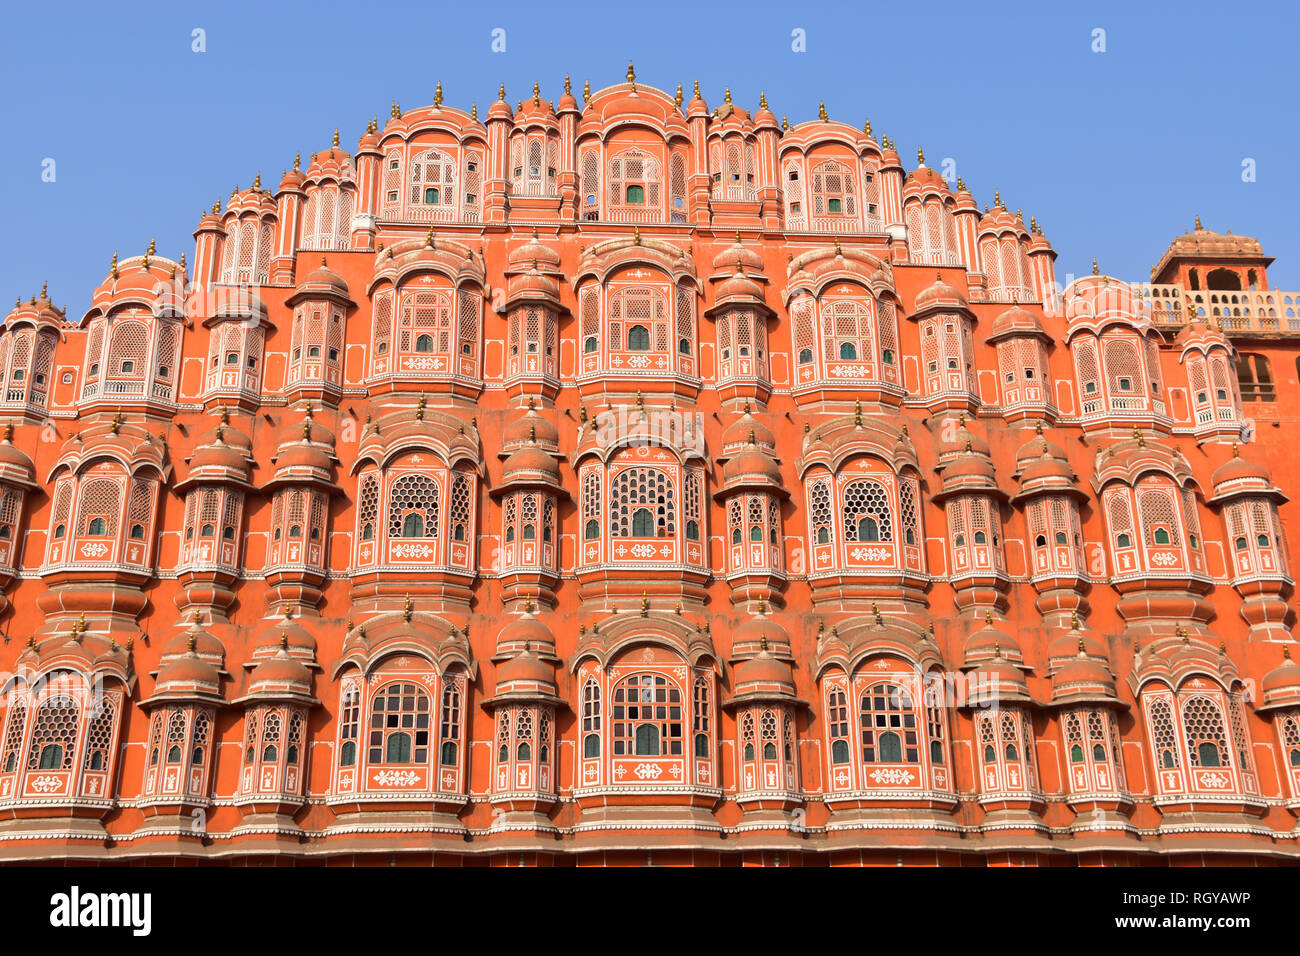 Hawa Mahal, Palace of Winds, Jaipur, Rajasthan, India Stock Photo